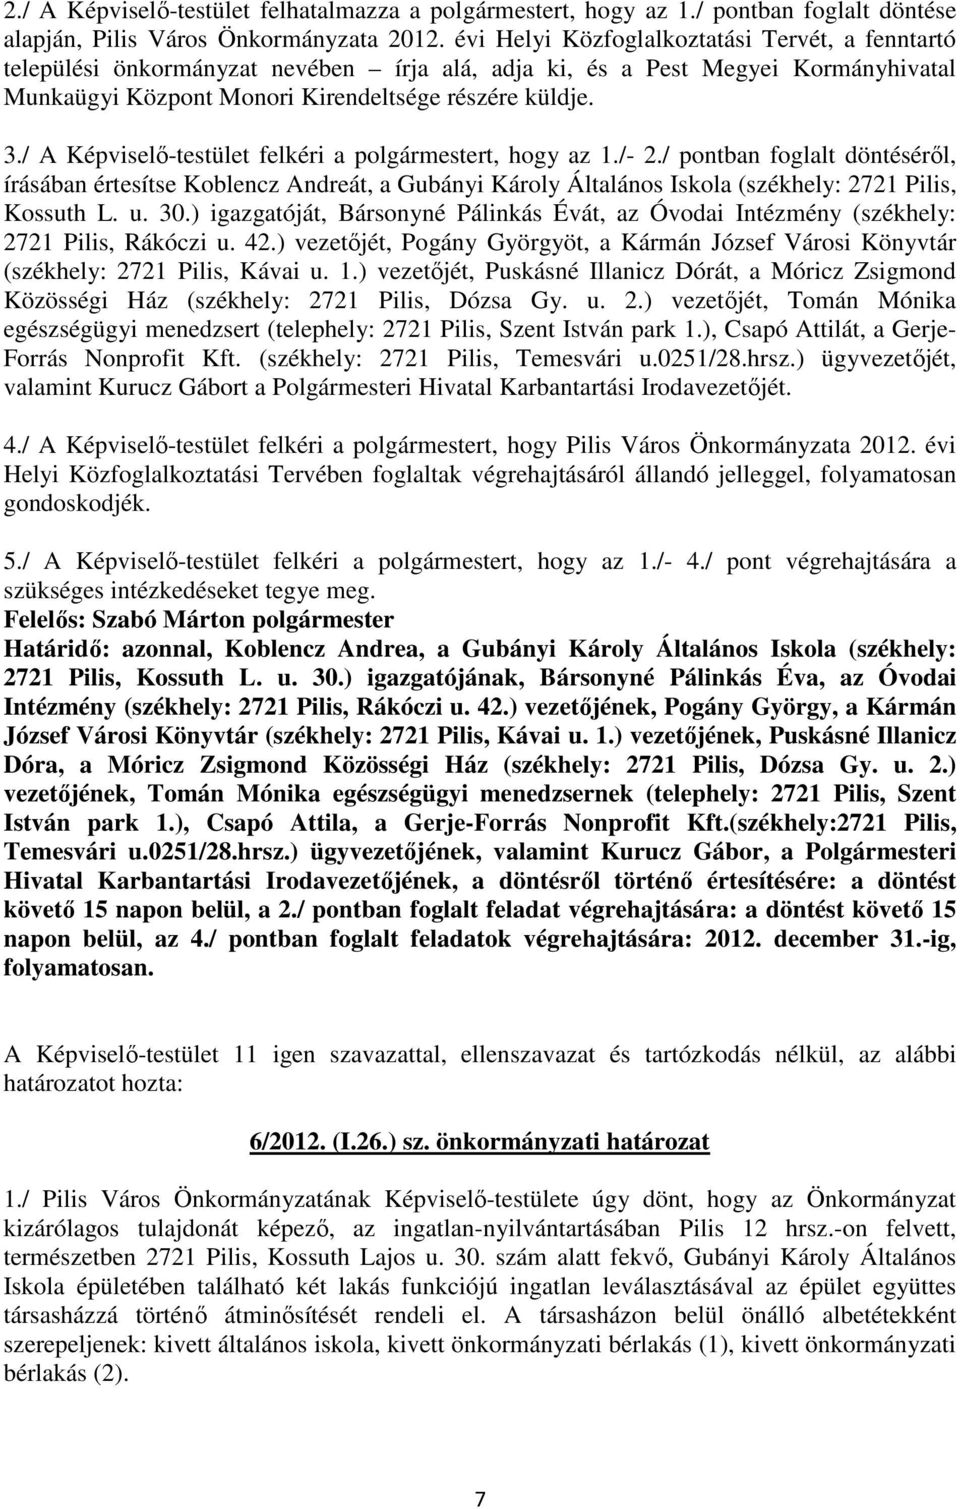 / A Képviselı-testület felkéri a polgármestert, hogy az 1./- 2./ pontban foglalt döntésérıl, írásában értesítse Koblencz Andreát, a Gubányi Károly Általános Iskola (székhely: 2721 Pilis, Kossuth L. u.